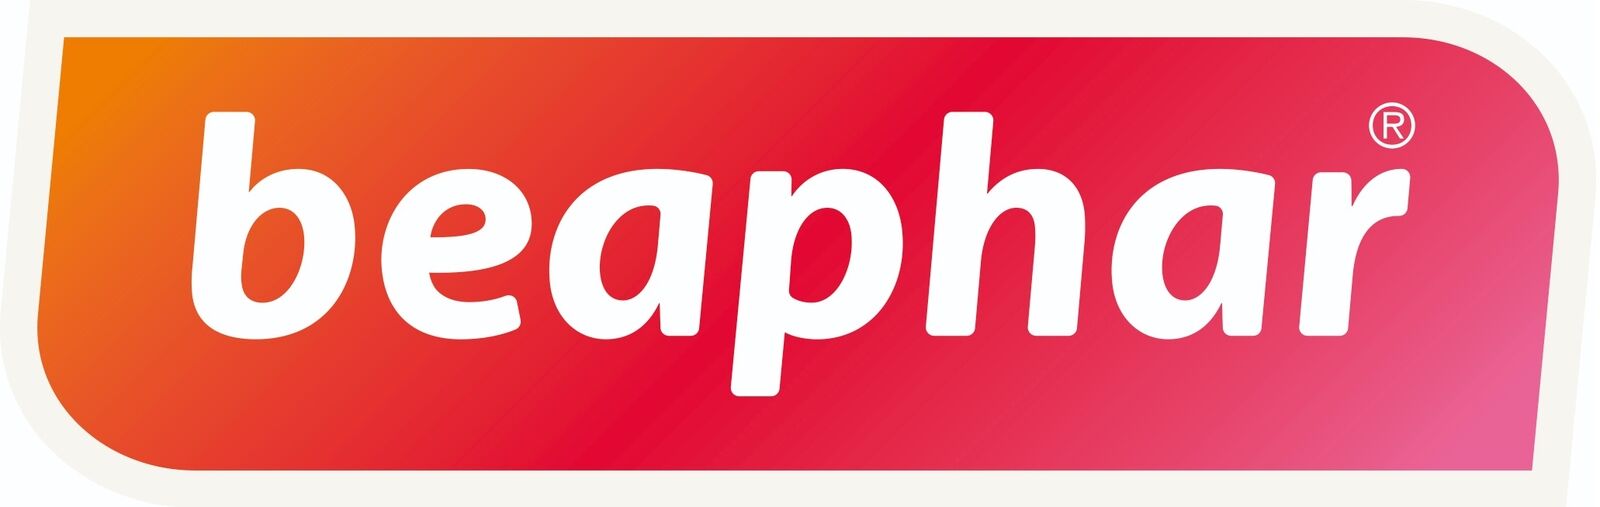 beaphar-logo